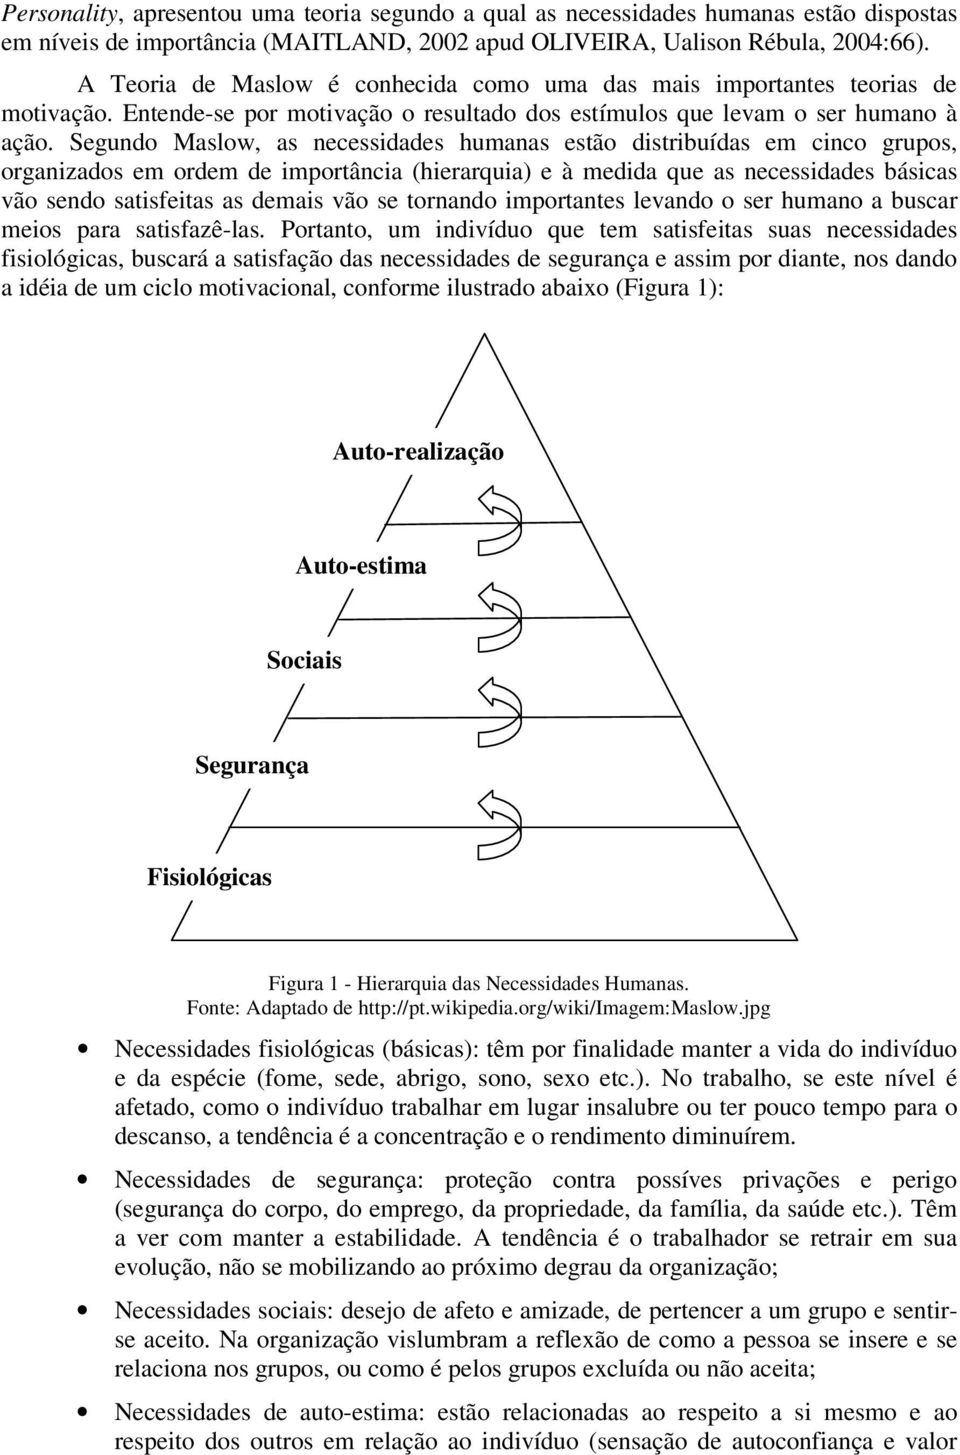 Segundo Maslow, as necessidades humanas estão distribuídas em cinco grupos, organizados em ordem de importância (hierarquia) e à medida que as necessidades básicas vão sendo satisfeitas as demais vão